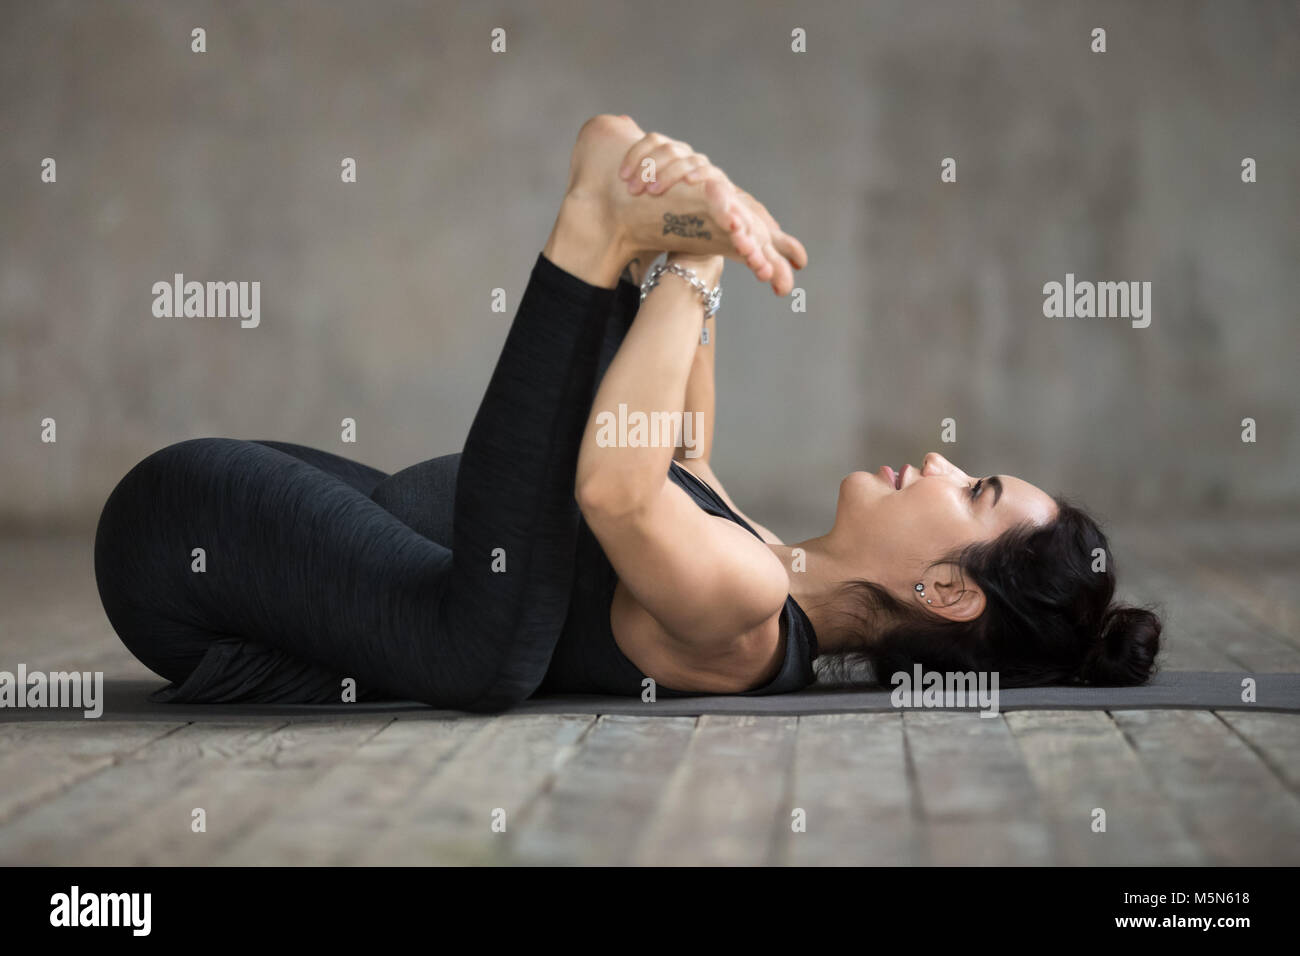 Junge sportliche Frau Üben Yoga, Happy Baby übung, Ananda Balasana  darstellen, arbeiten, tragen Sportswear, schwarze Hose und Top, innen voll  Stockfotografie - Alamy